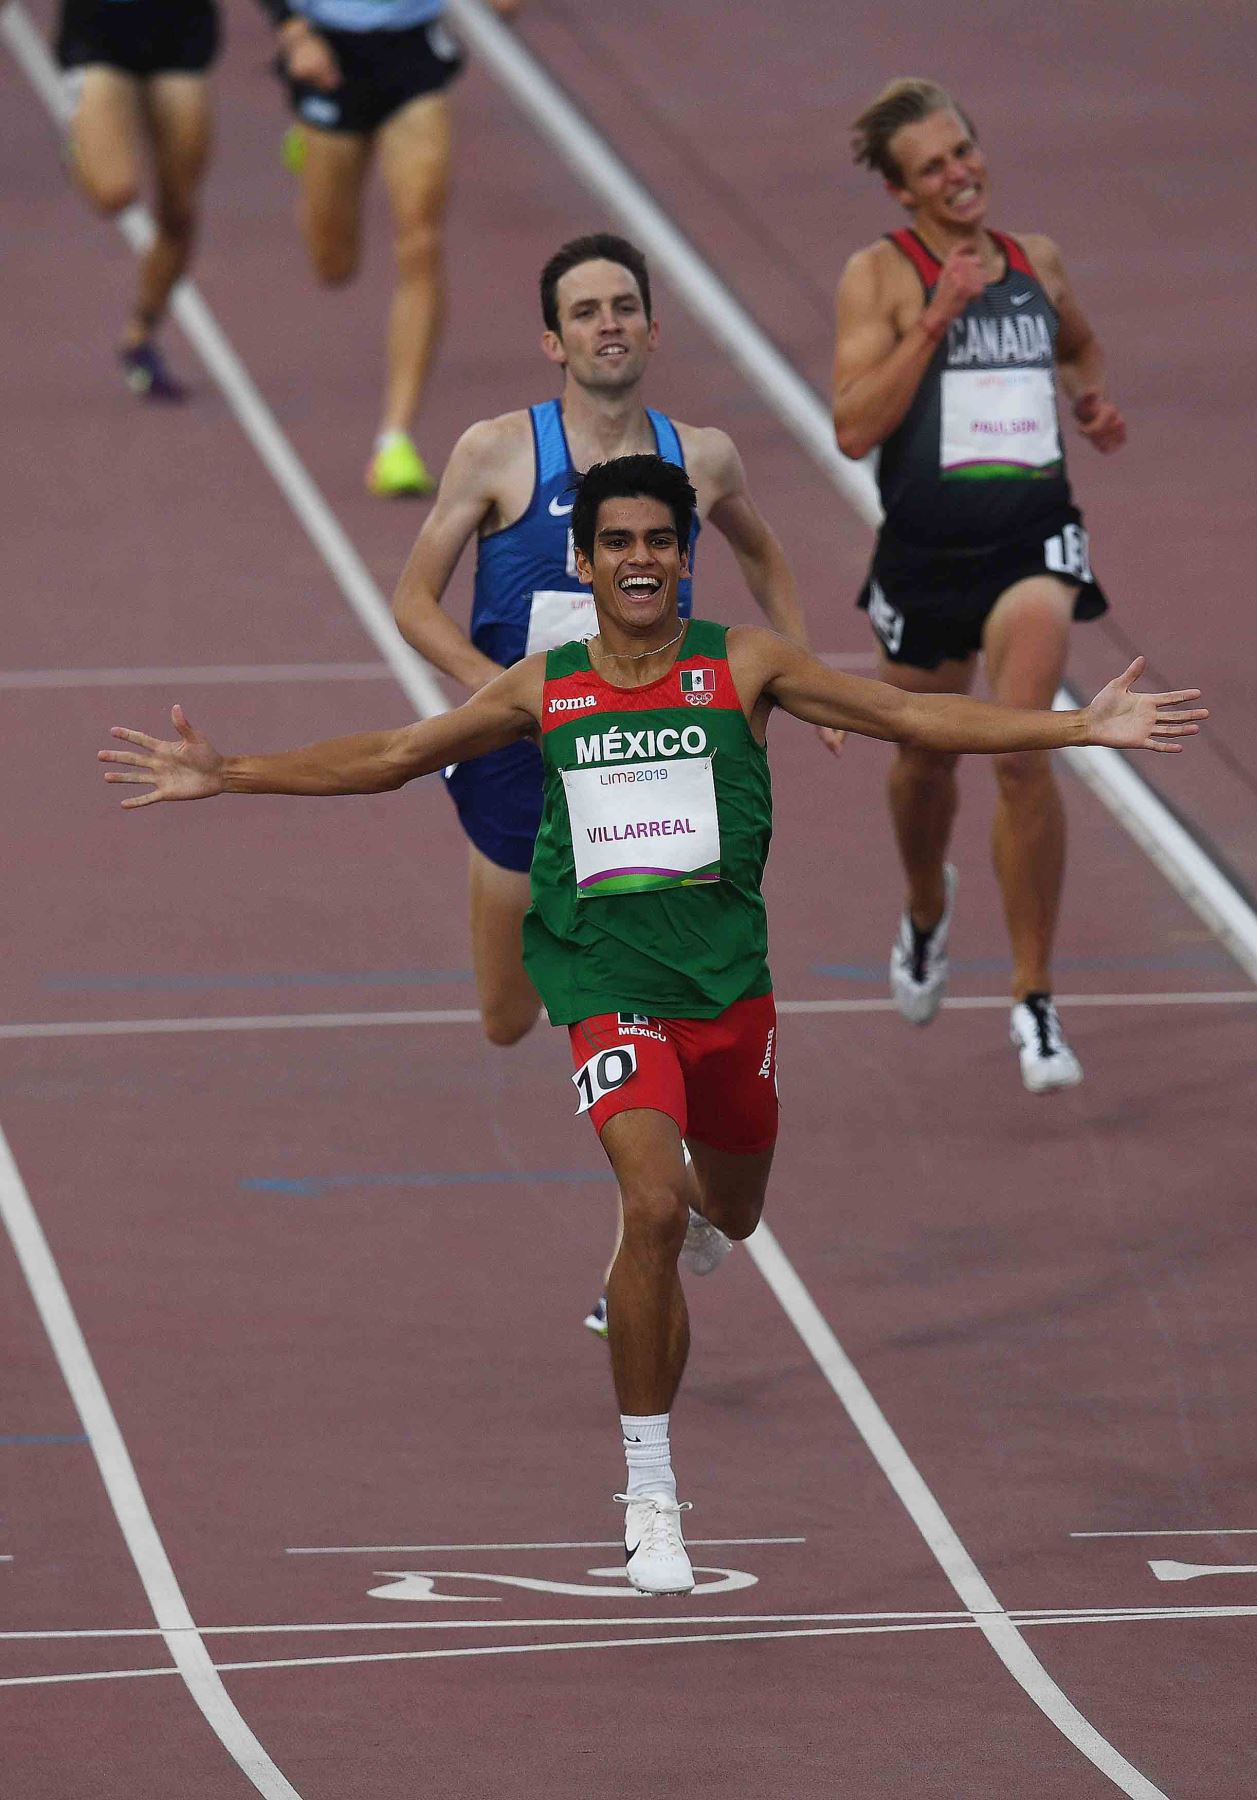 El mexicano José Villarreal celebra después de ganar la medalla de oro en la final de 1500m de atletismo masculino durante los Juegos Panamericanos de Lima 2019. AFP